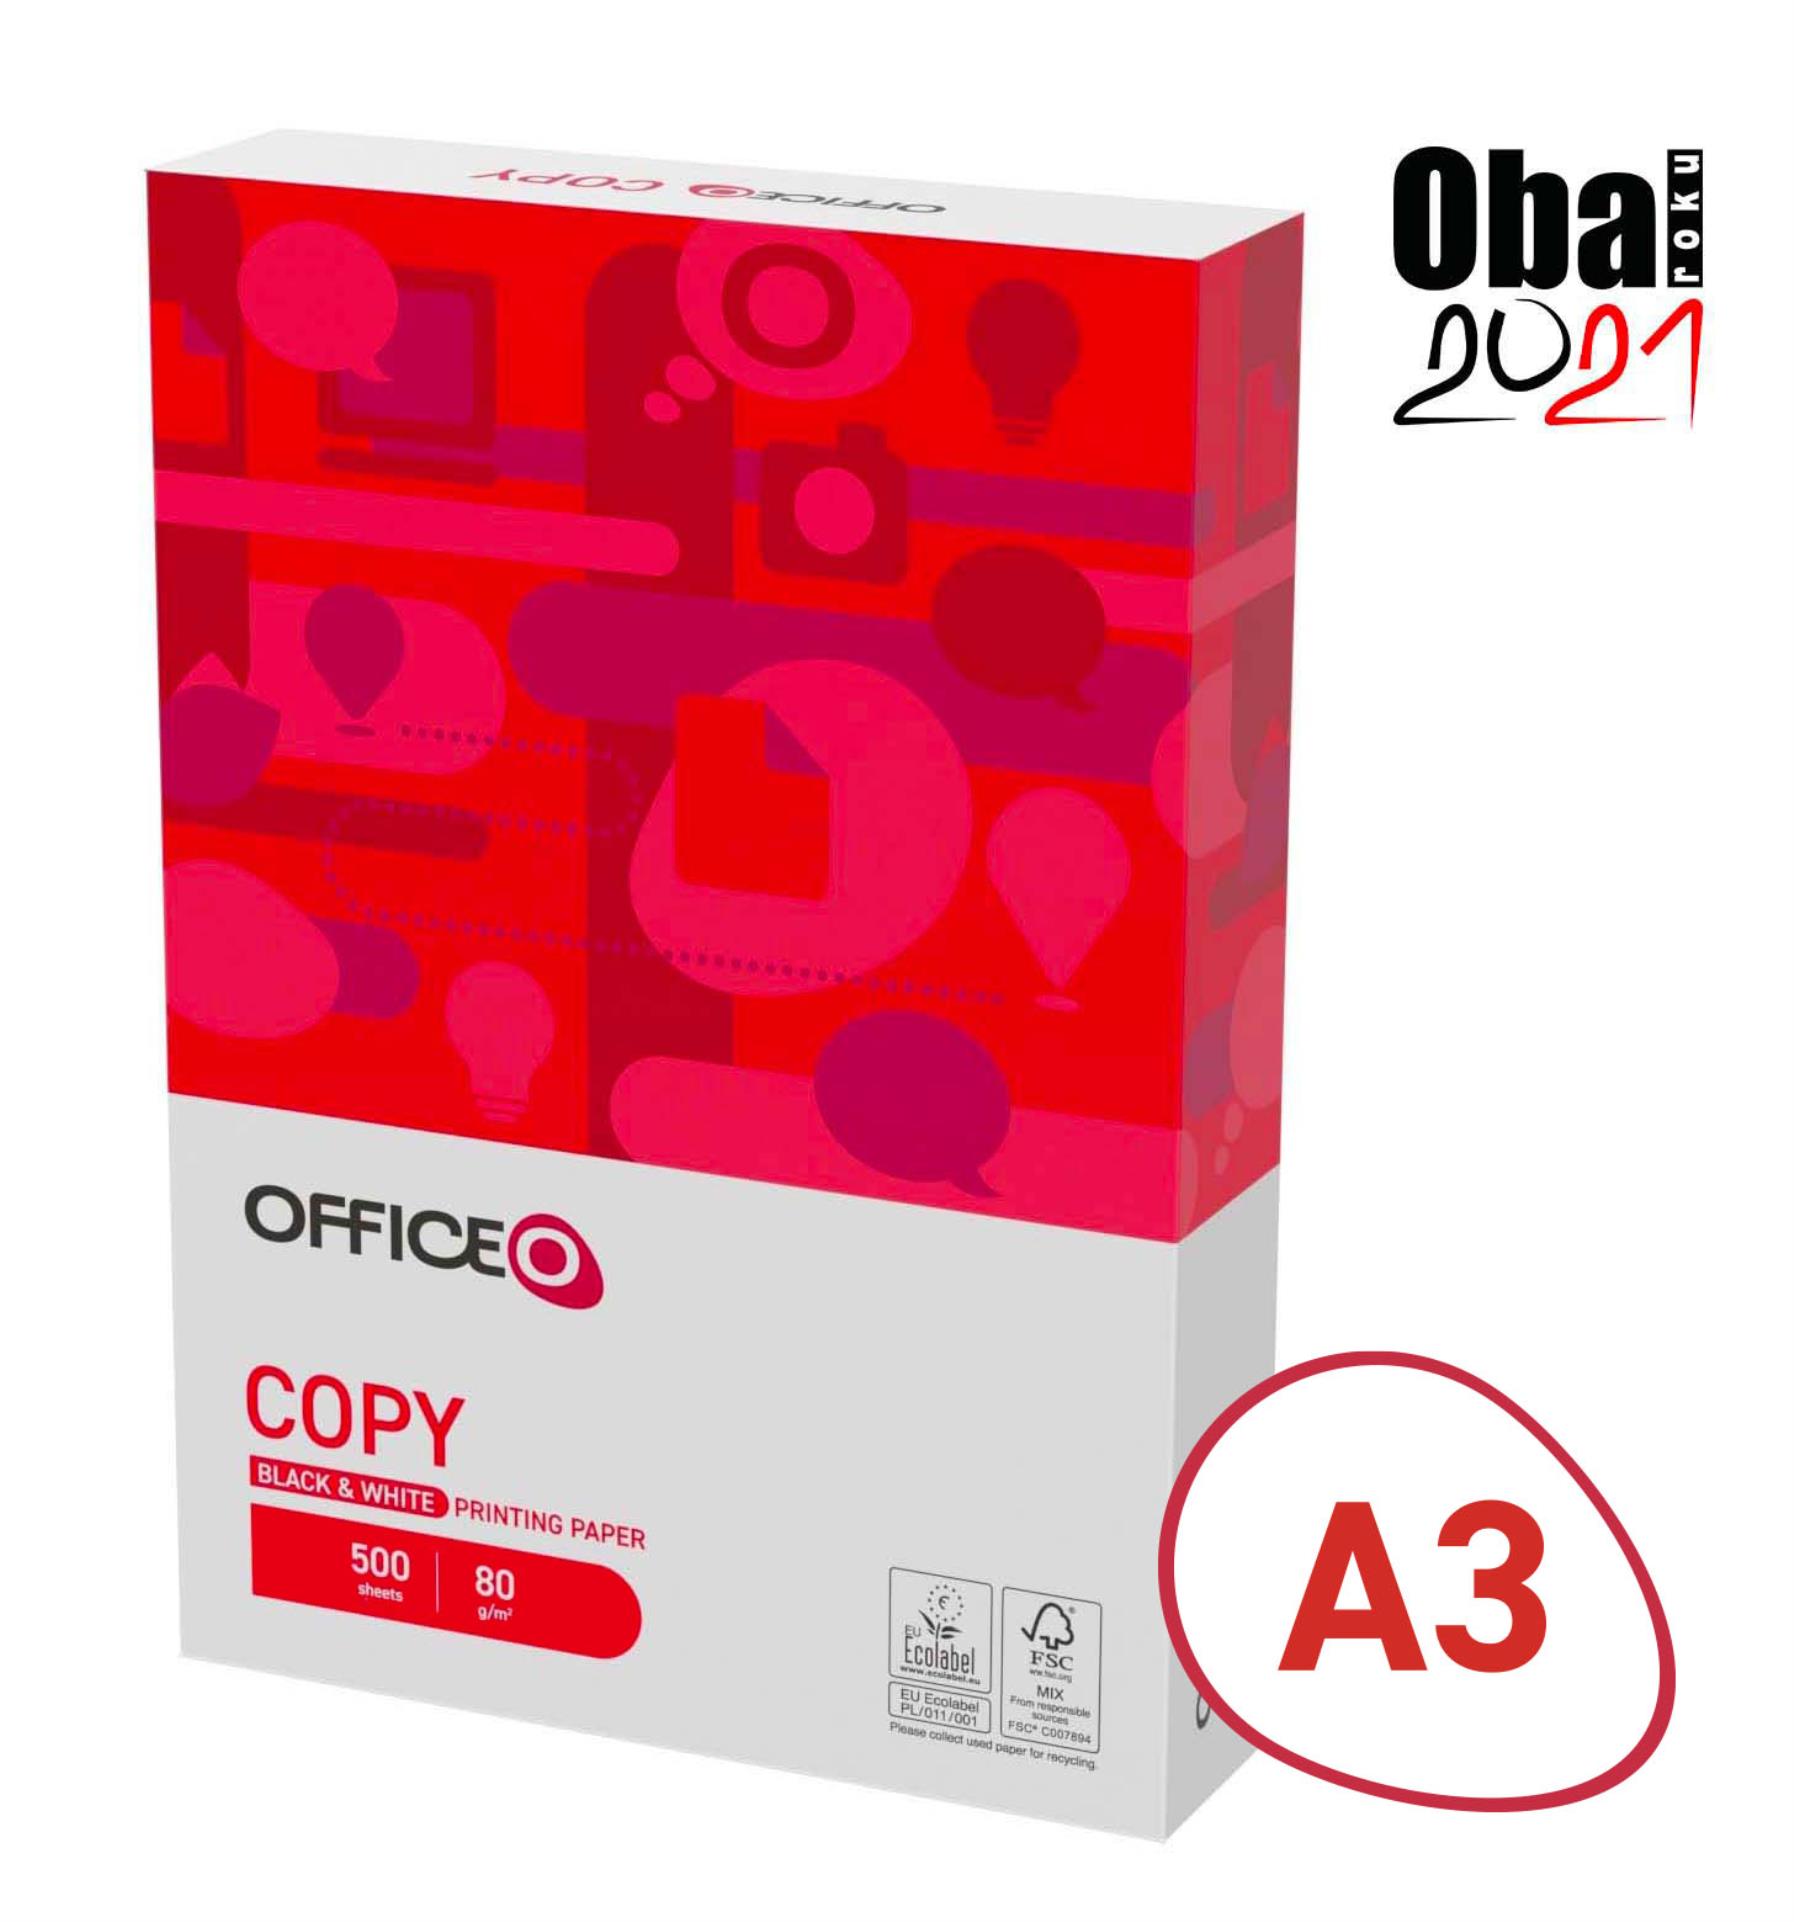 Kancelářský papír OFFICEO Copy A3 - 80 g/m2, 500 listů